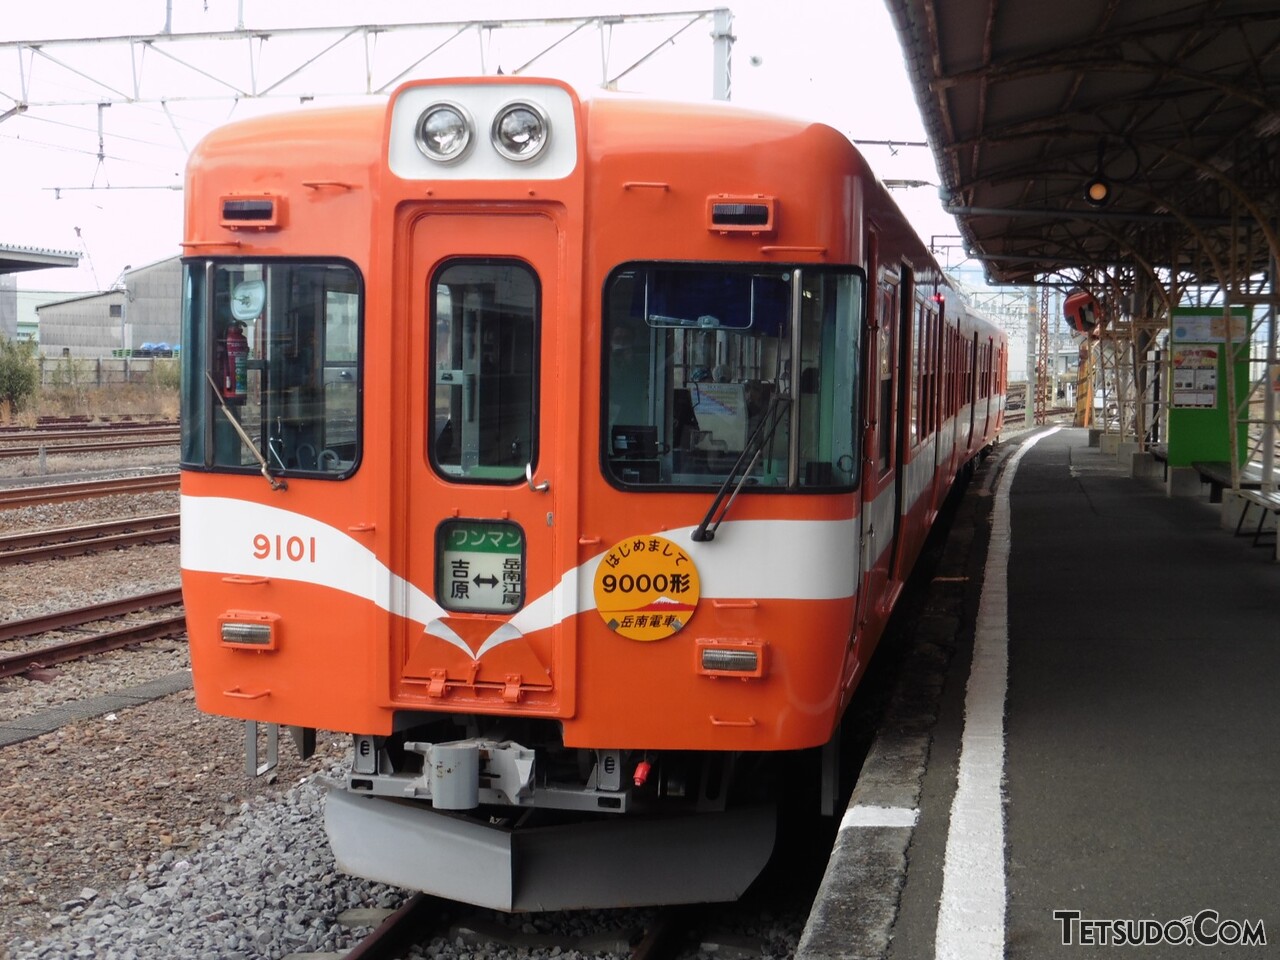 岳南電車の9000形。京王から富士山麓電気鉄道に渡った車両が、さらに譲渡されたものです